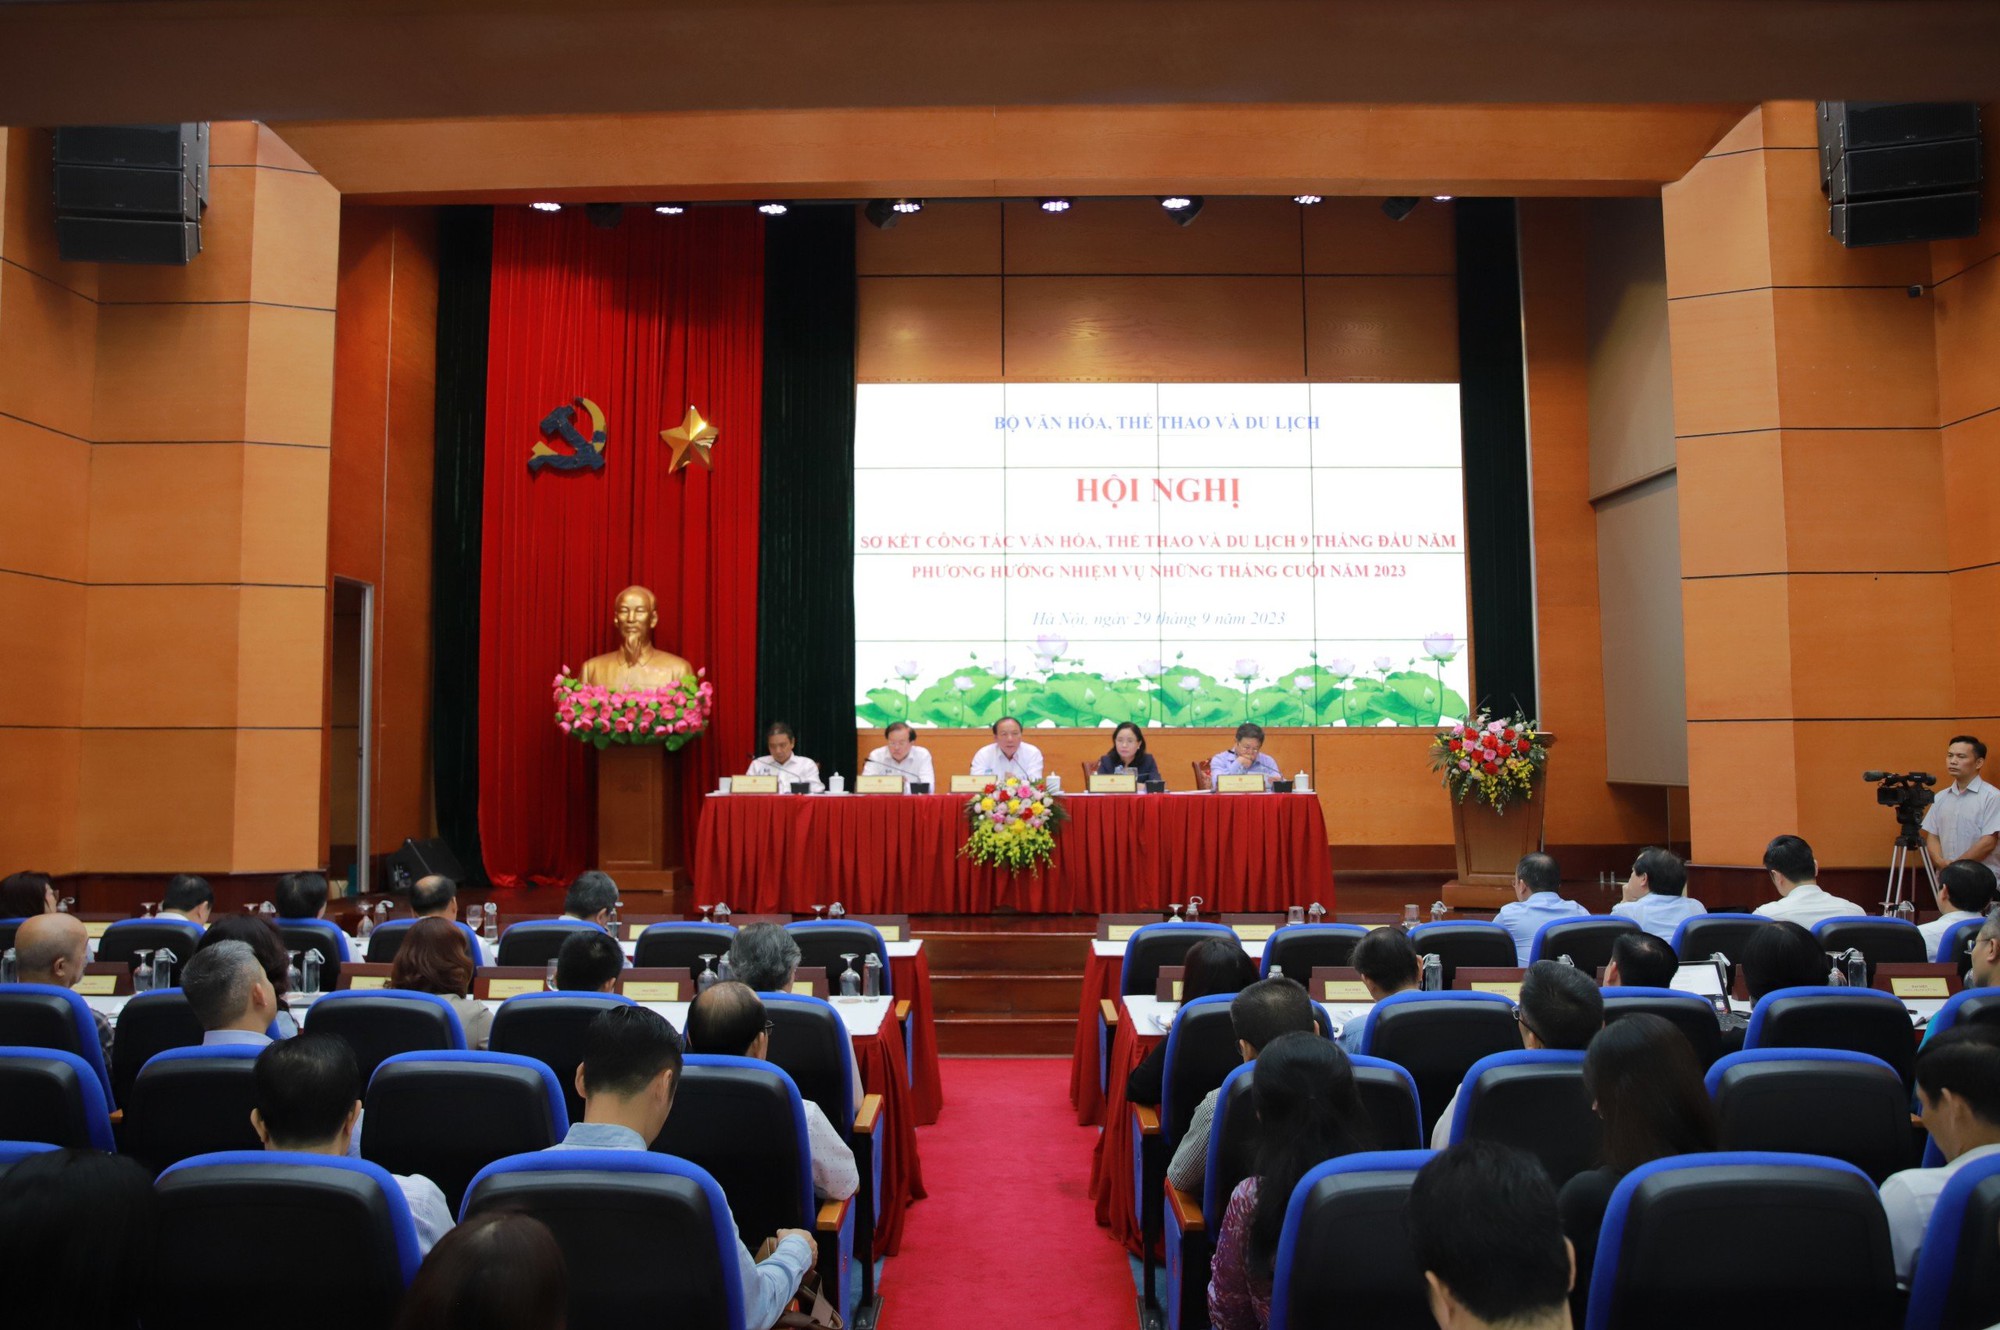 Bộ trưởng Nguyễn Văn Hùng: Trách nhiệm, gương mẫu, đoàn kết, sáng tạo để tăng tốc về đích trong những tháng cuối năm - Ảnh 1.